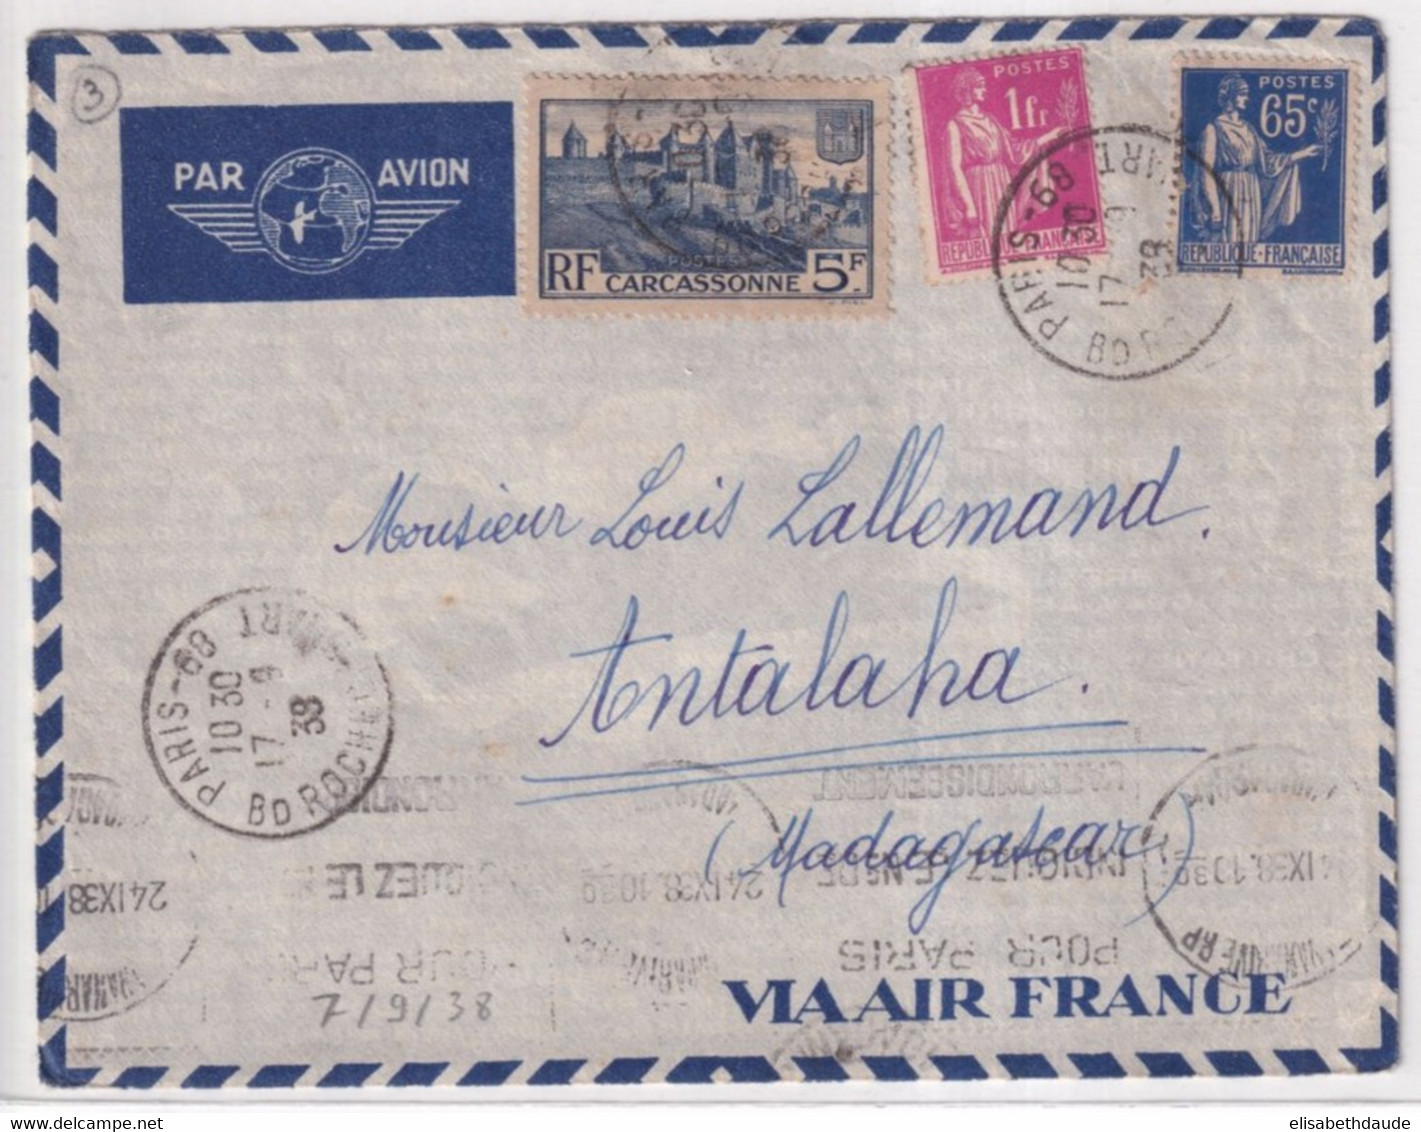 1938 - ENVELOPPE Par AVION AIR FRANCE De PARIS => ANTALAHA (MADAGASCAR) - DESTINATION ! - Storia Postale